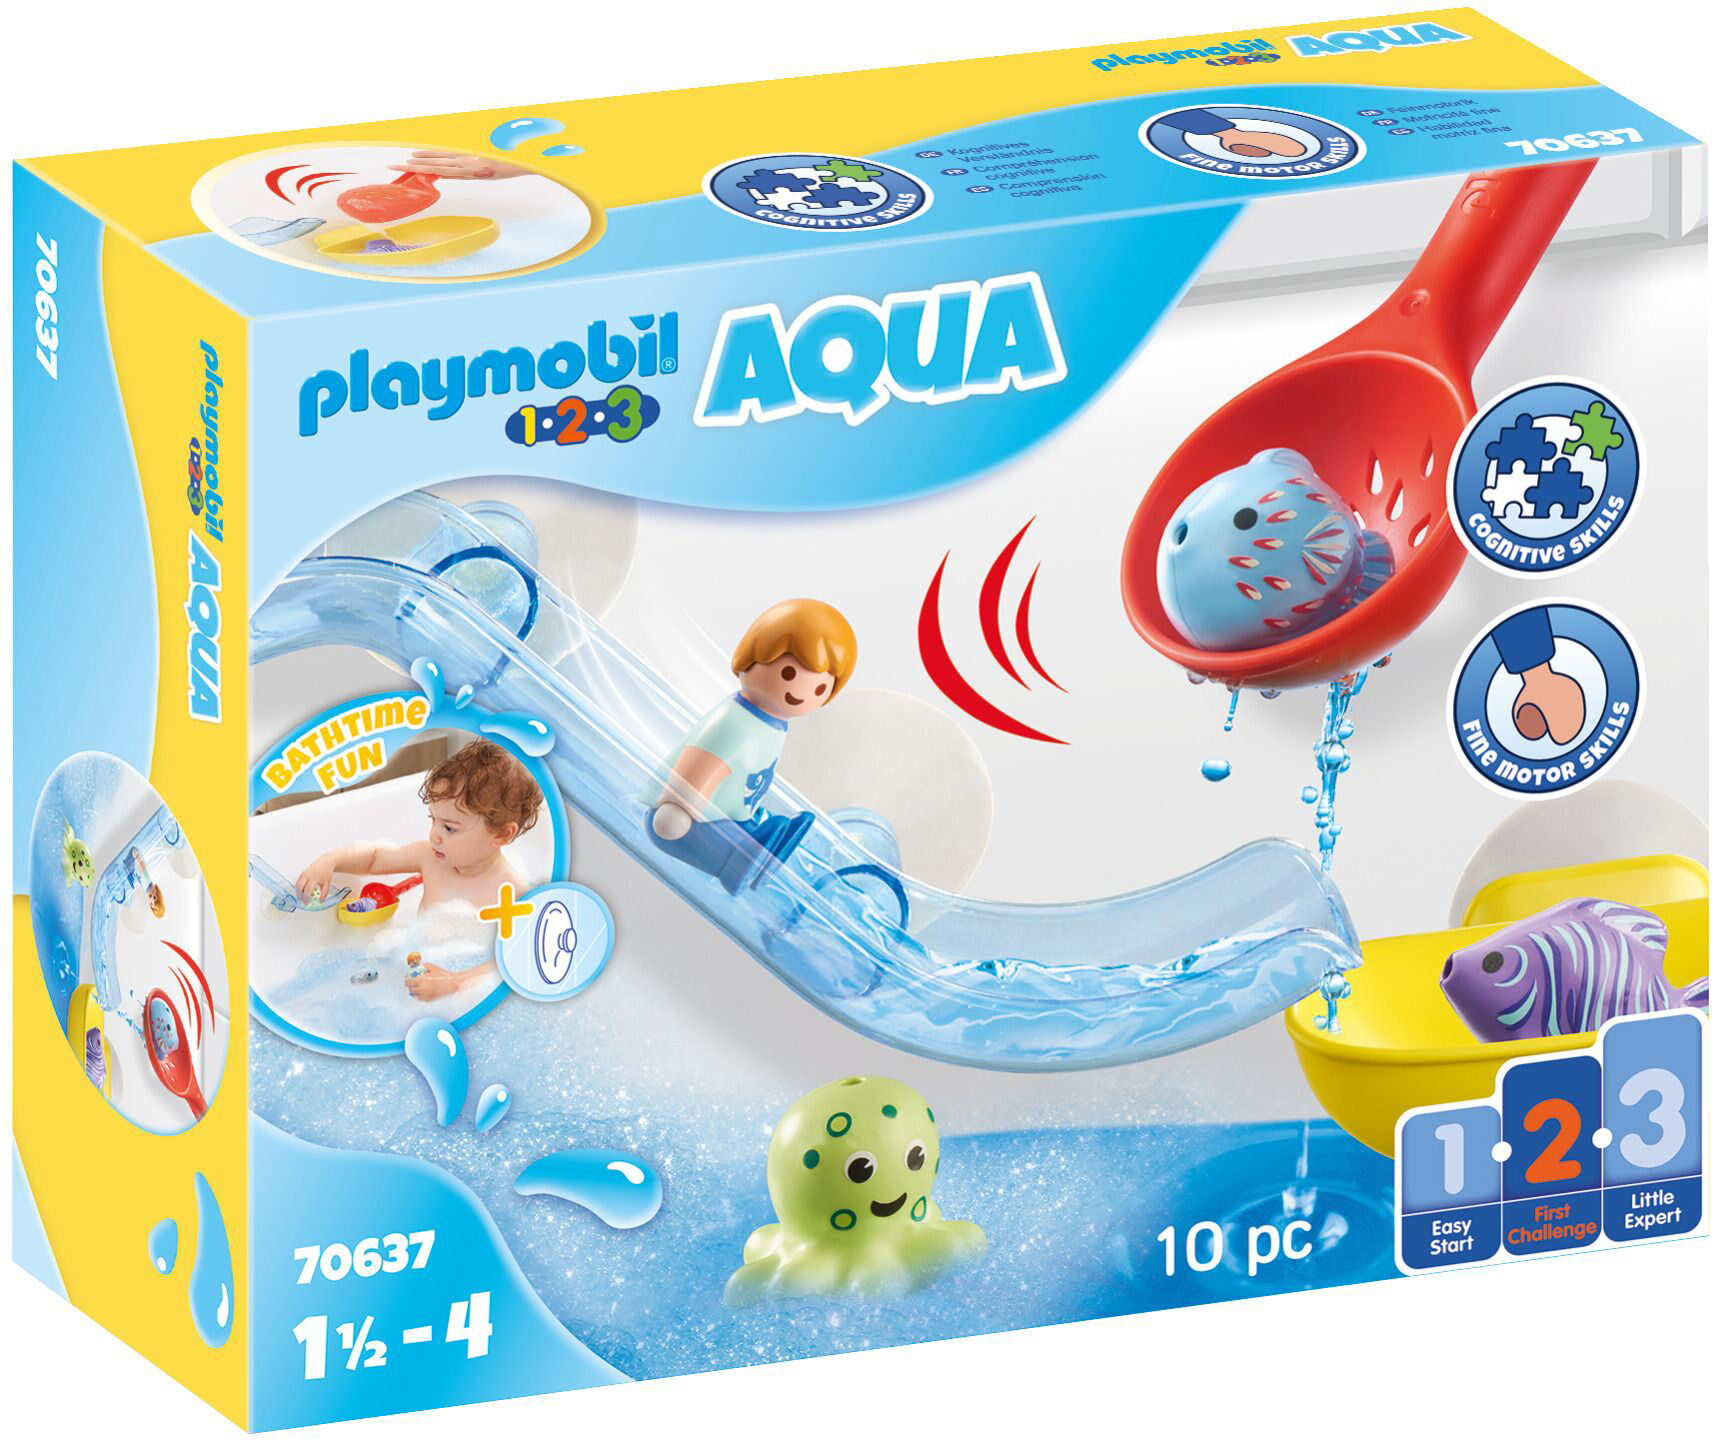 Playmobil 70637 1.2.3 Aqua Byggsats Vattenkana med Vattendjur